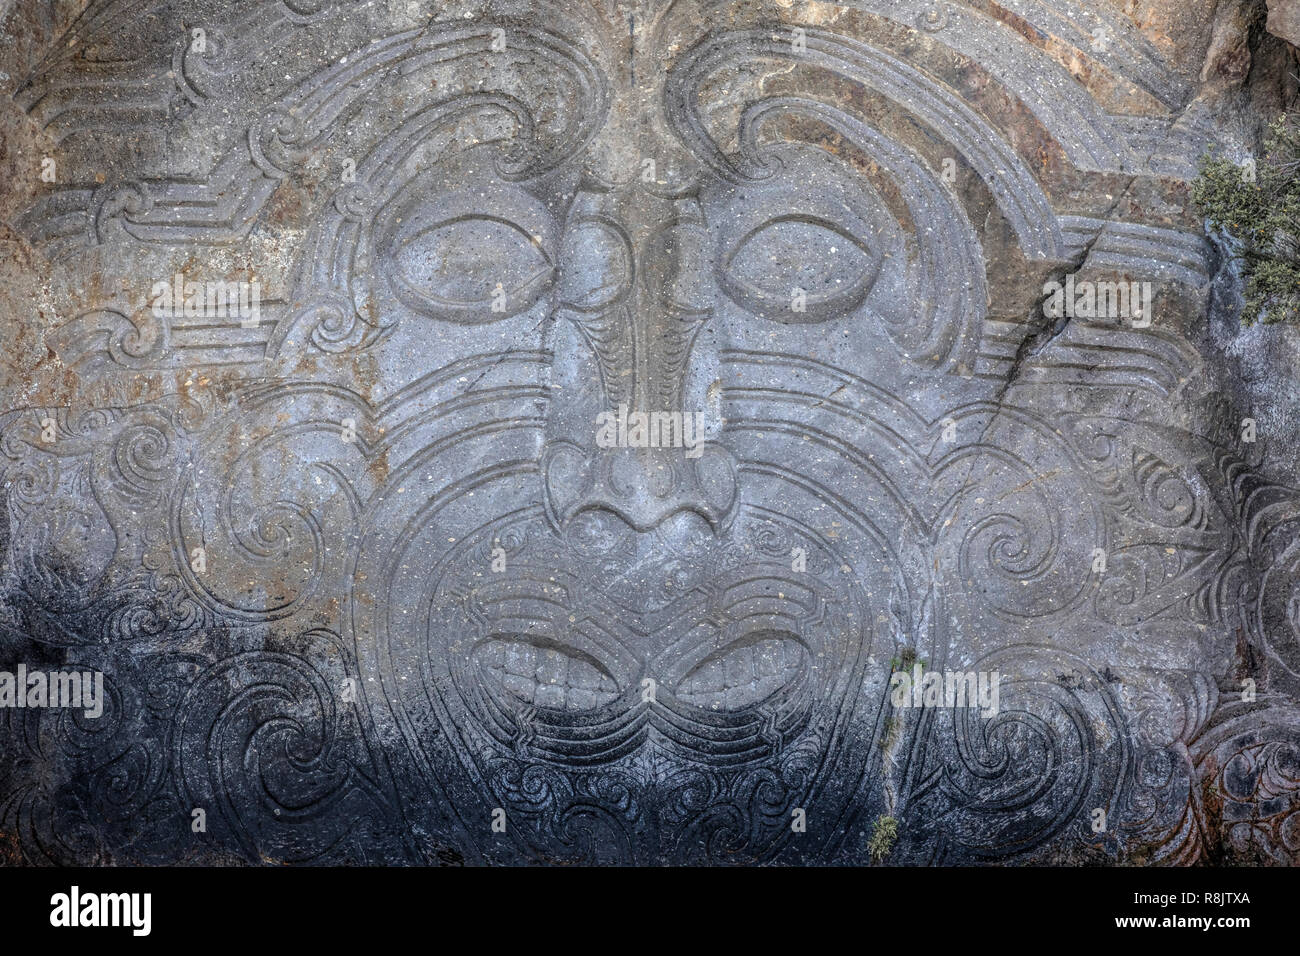 Le lac Taupo, Maori rock carvings, île du Nord, Nouvelle-Zélande Banque D'Images